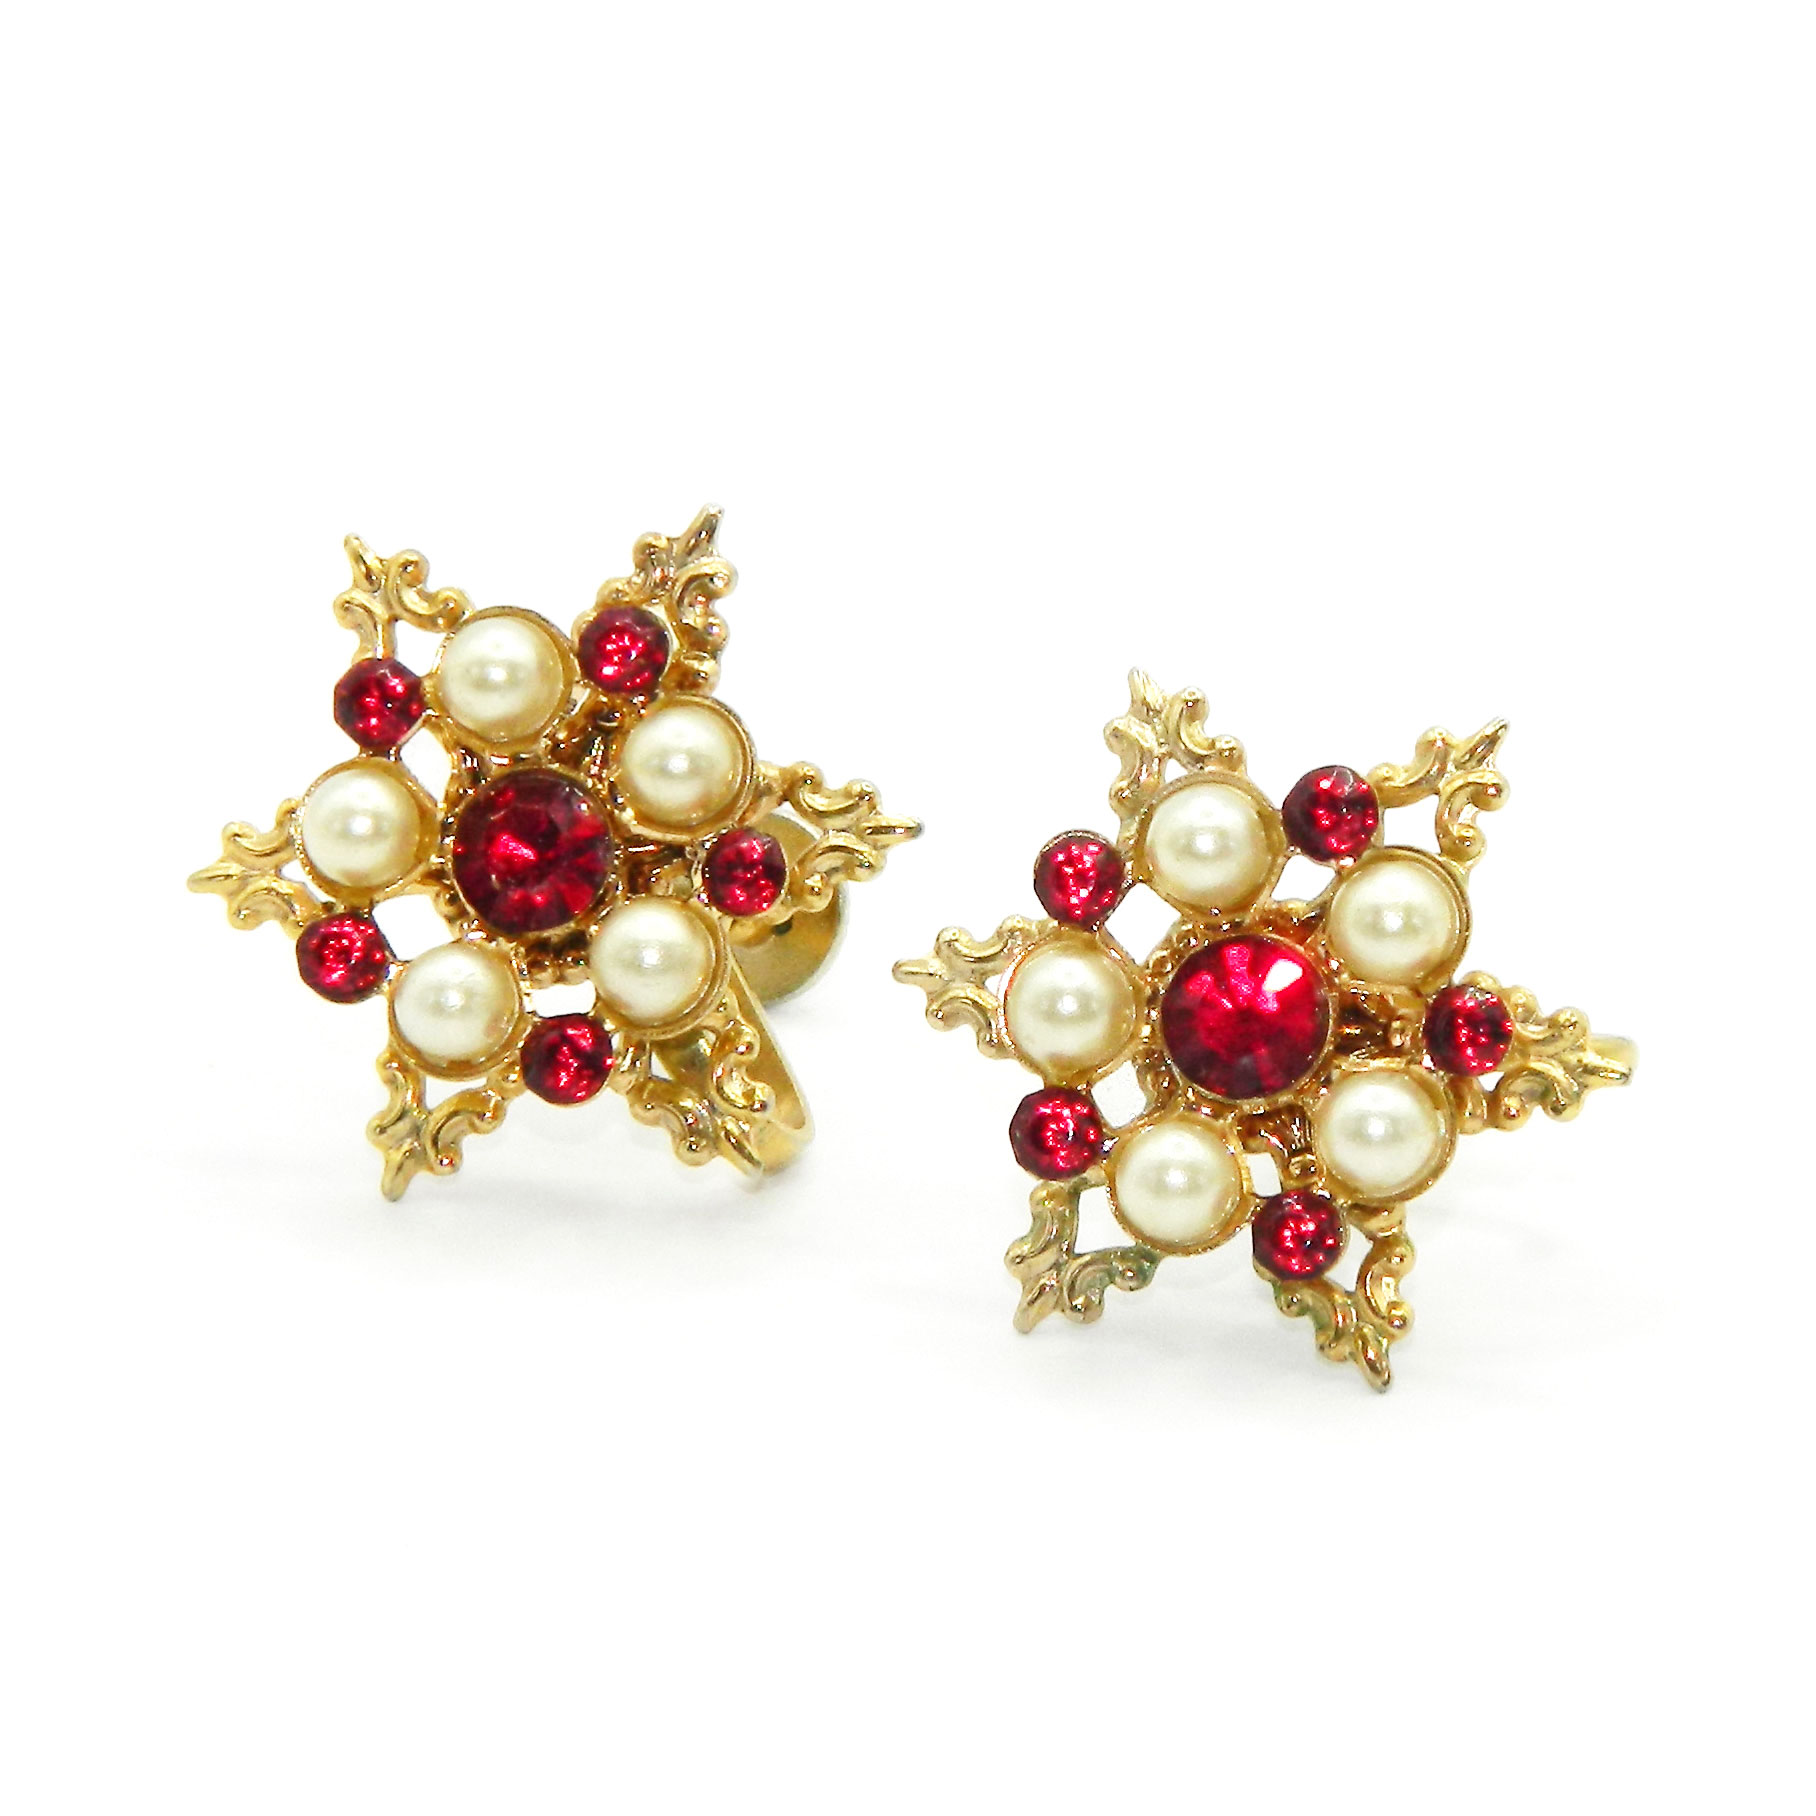 Rhinestone snowflake earrings